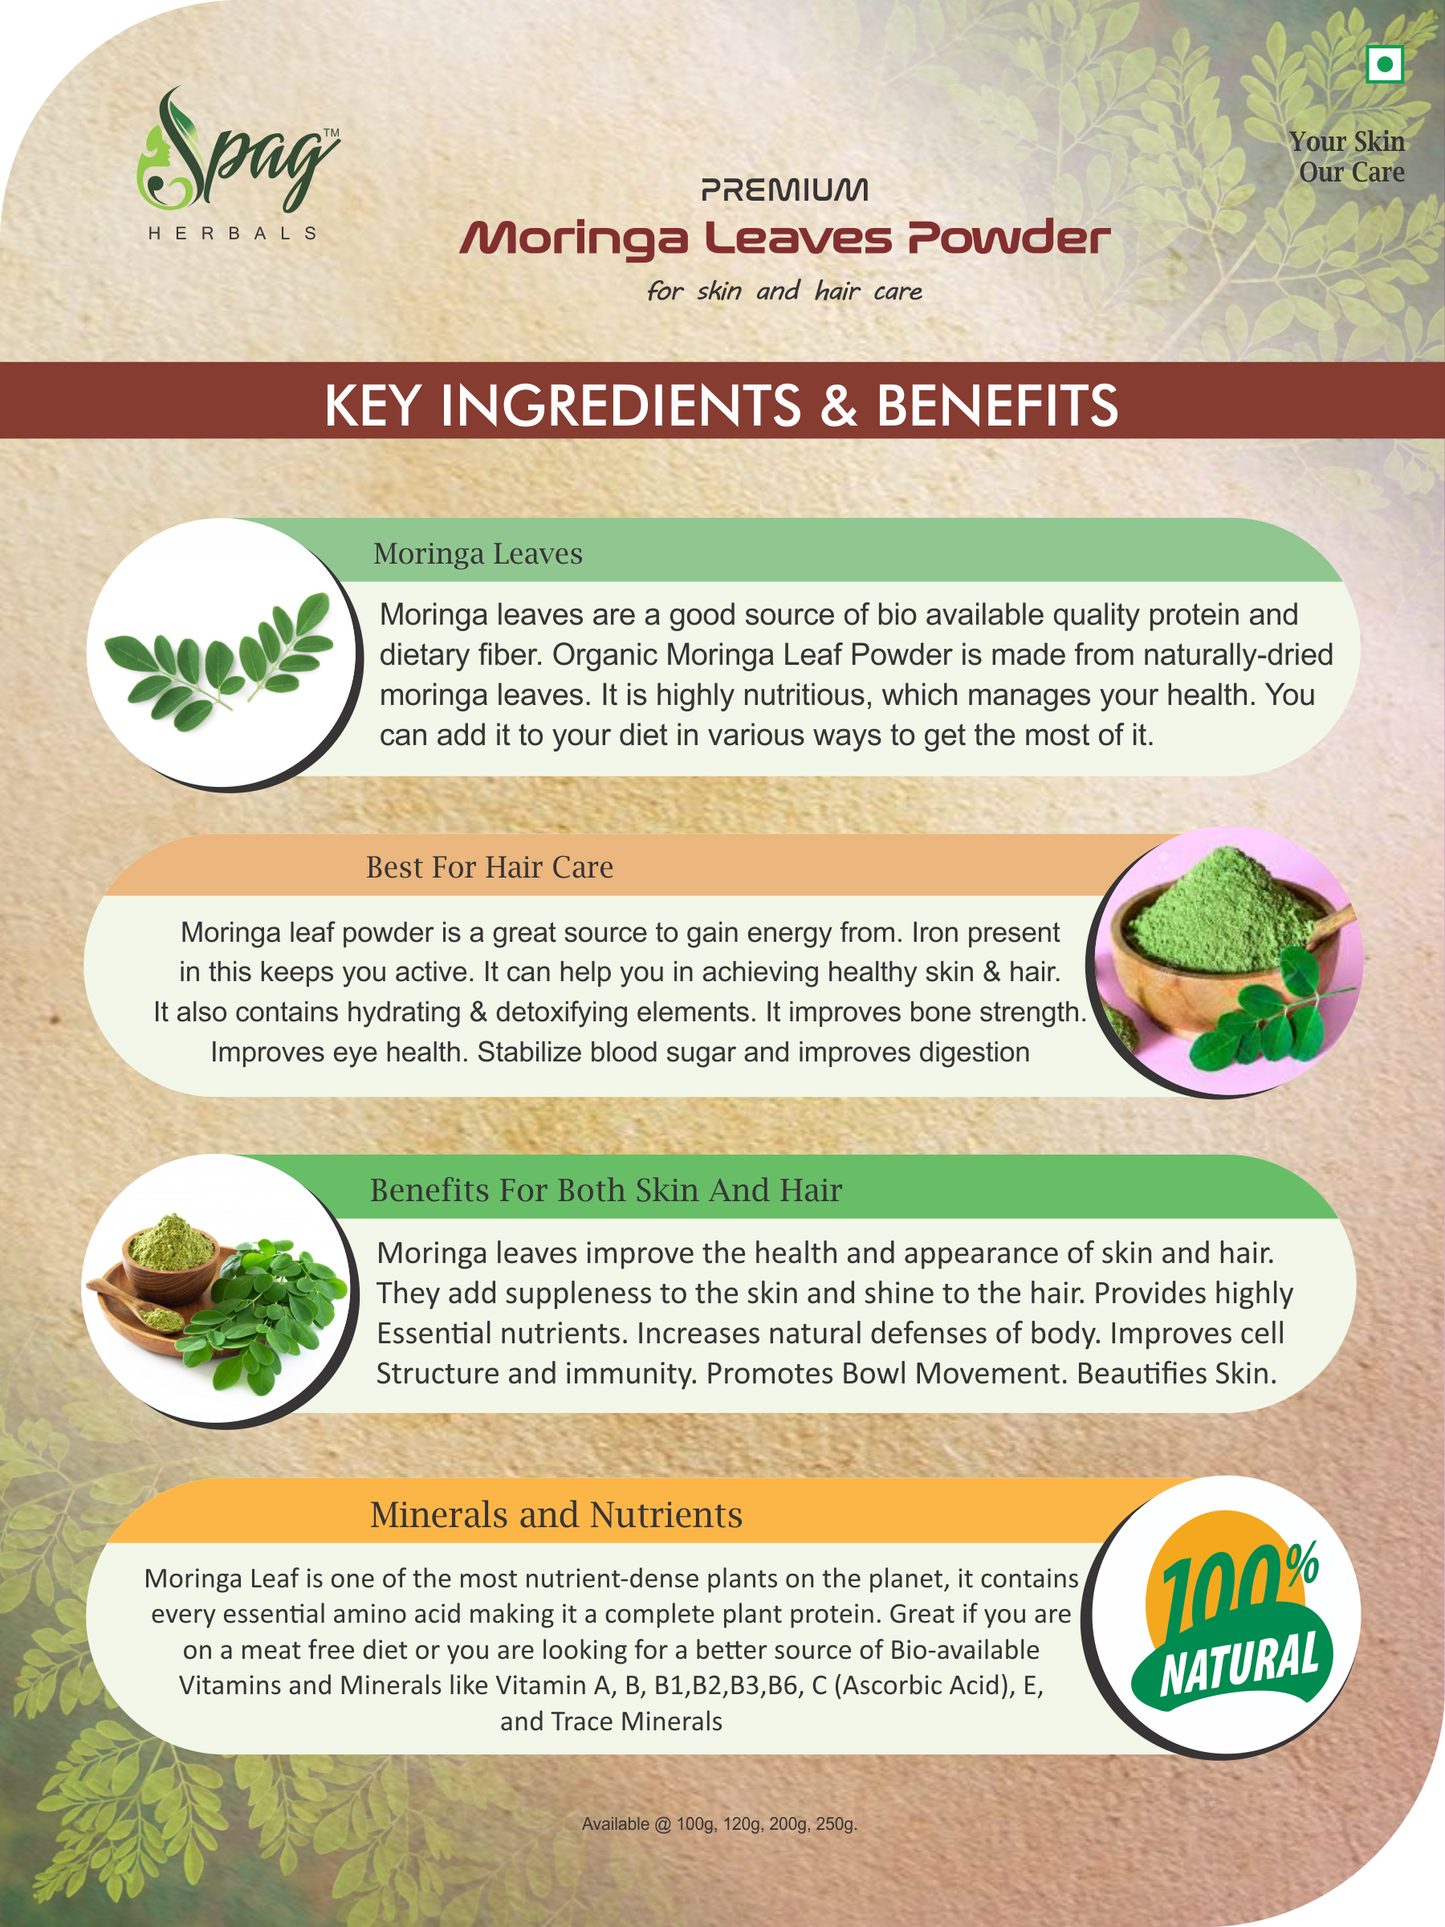 Spag Herbals Premium Moringa Leaf Powder